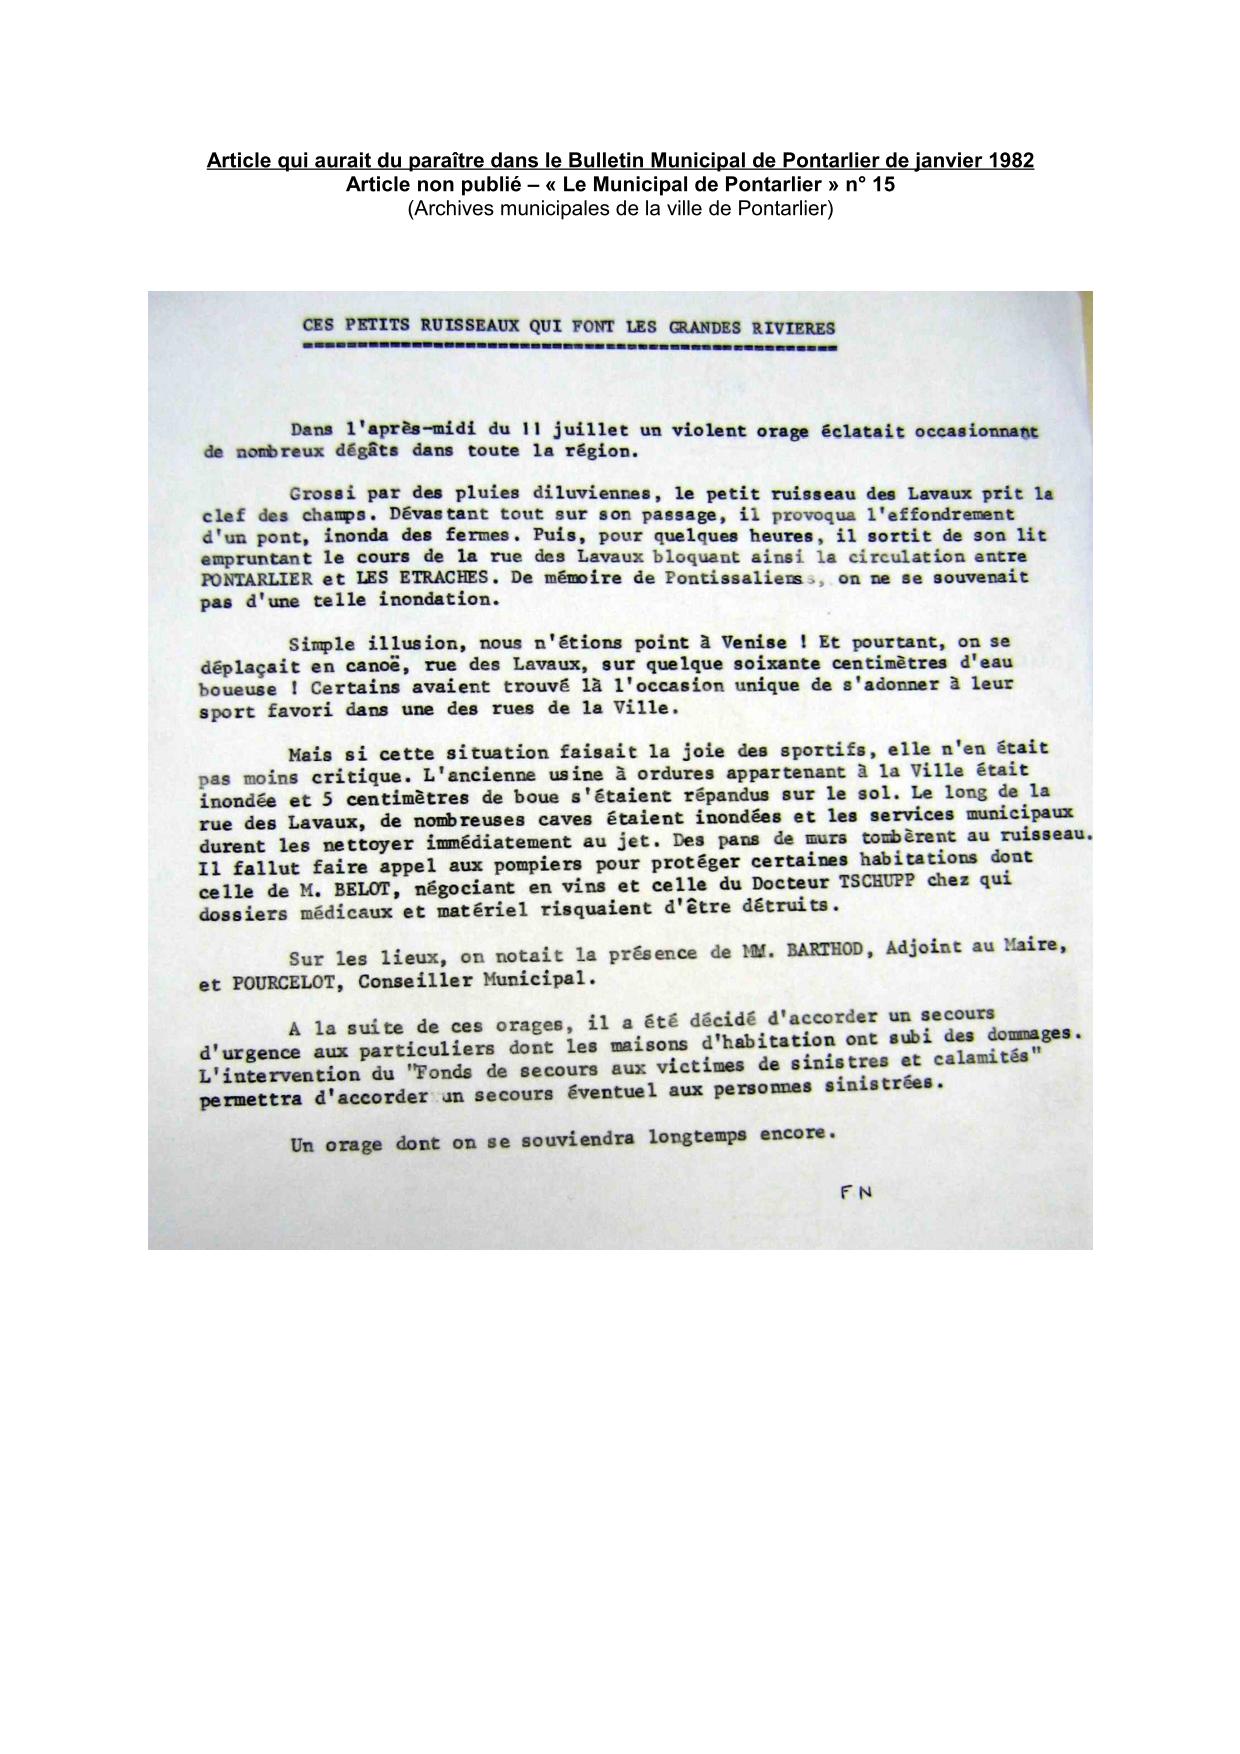 Article qui aurait du paraître dans le Bulletin Municipal de Pontarlier de janvier 1982 - Article non publié